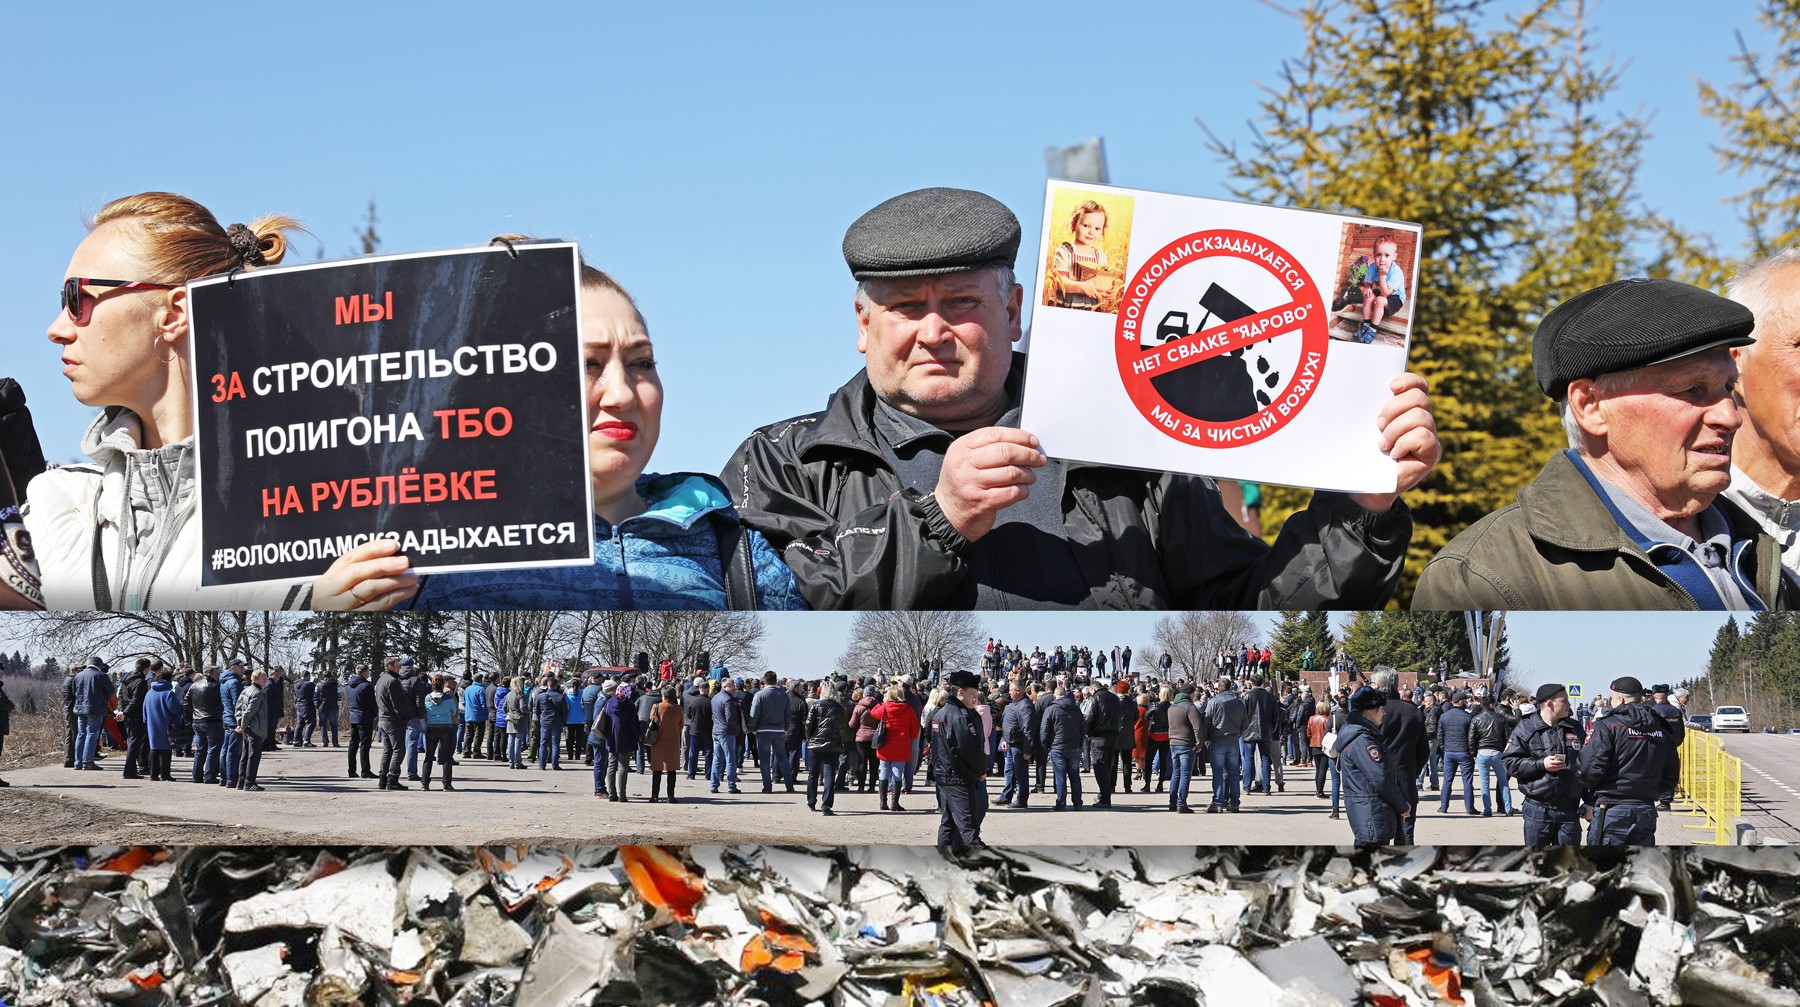 Активисты из Волоколамска попытались перекрыть подъезд к мусорному полигону Коллаж: © Daily Storm